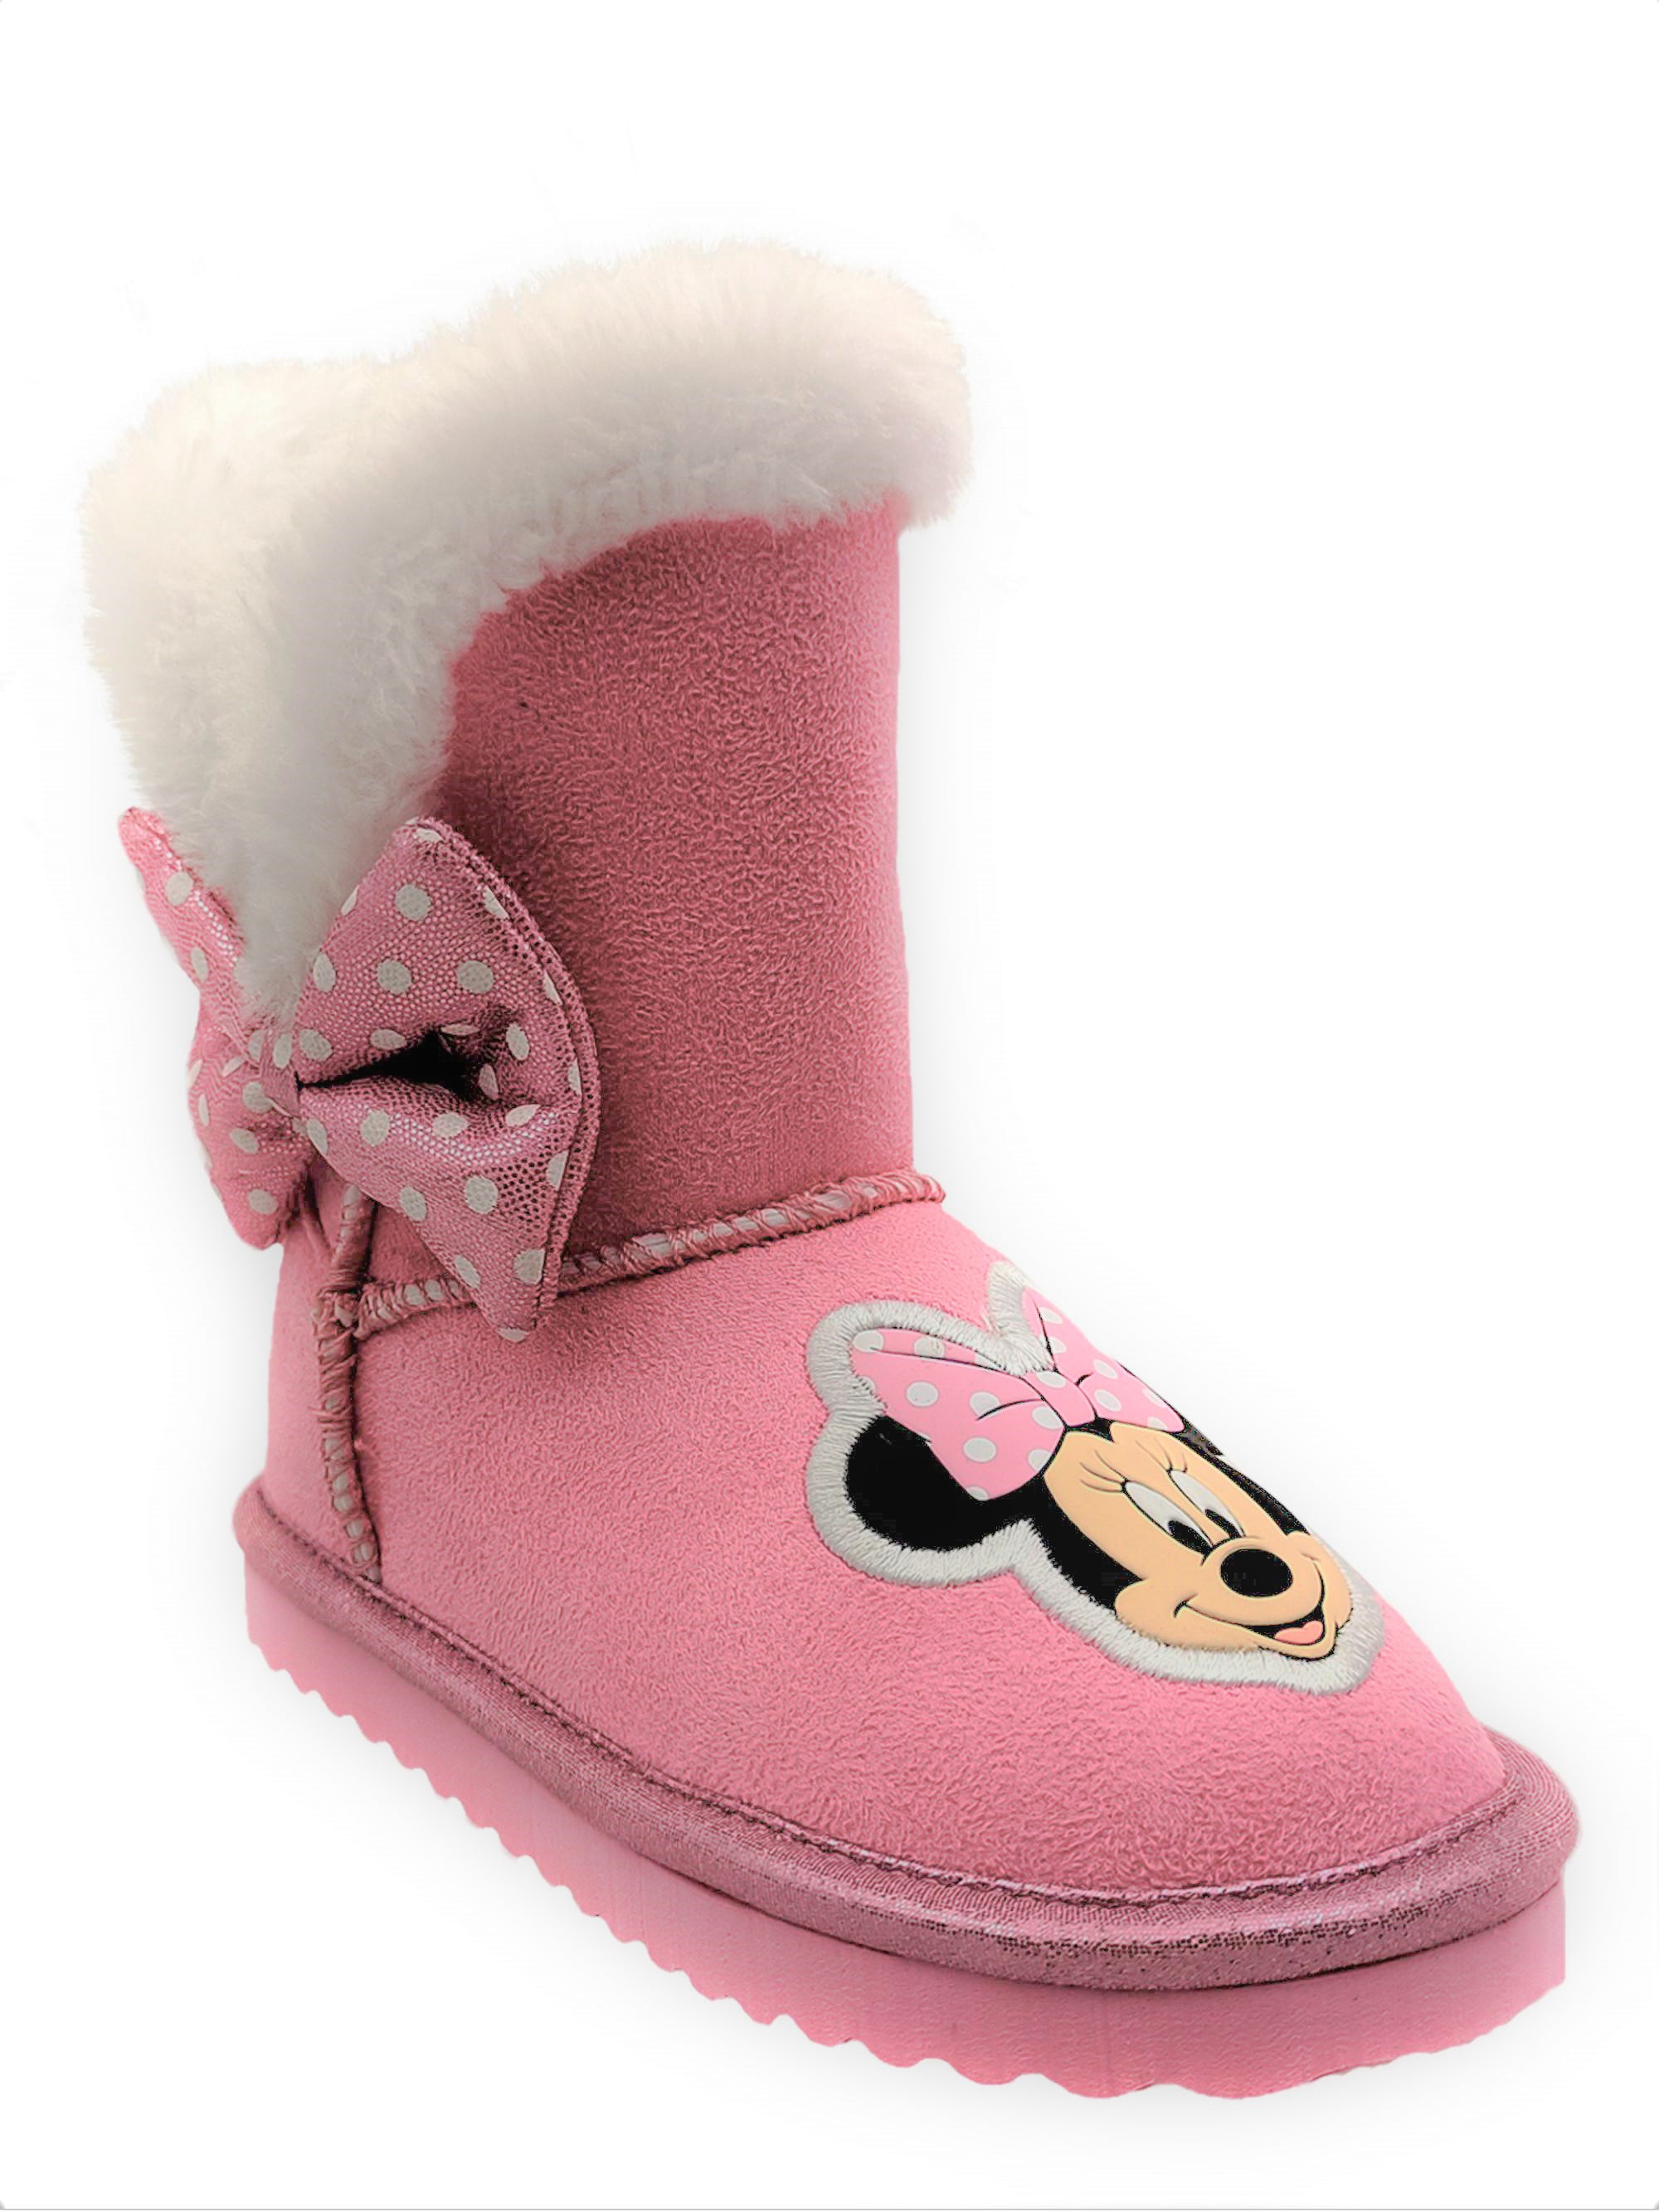 Niet meer geldig Slim Verkeerd Disney Minnie Mouse Cozy Faux Shearling Winter Boot (Toddler Girls) -  Walmart.com